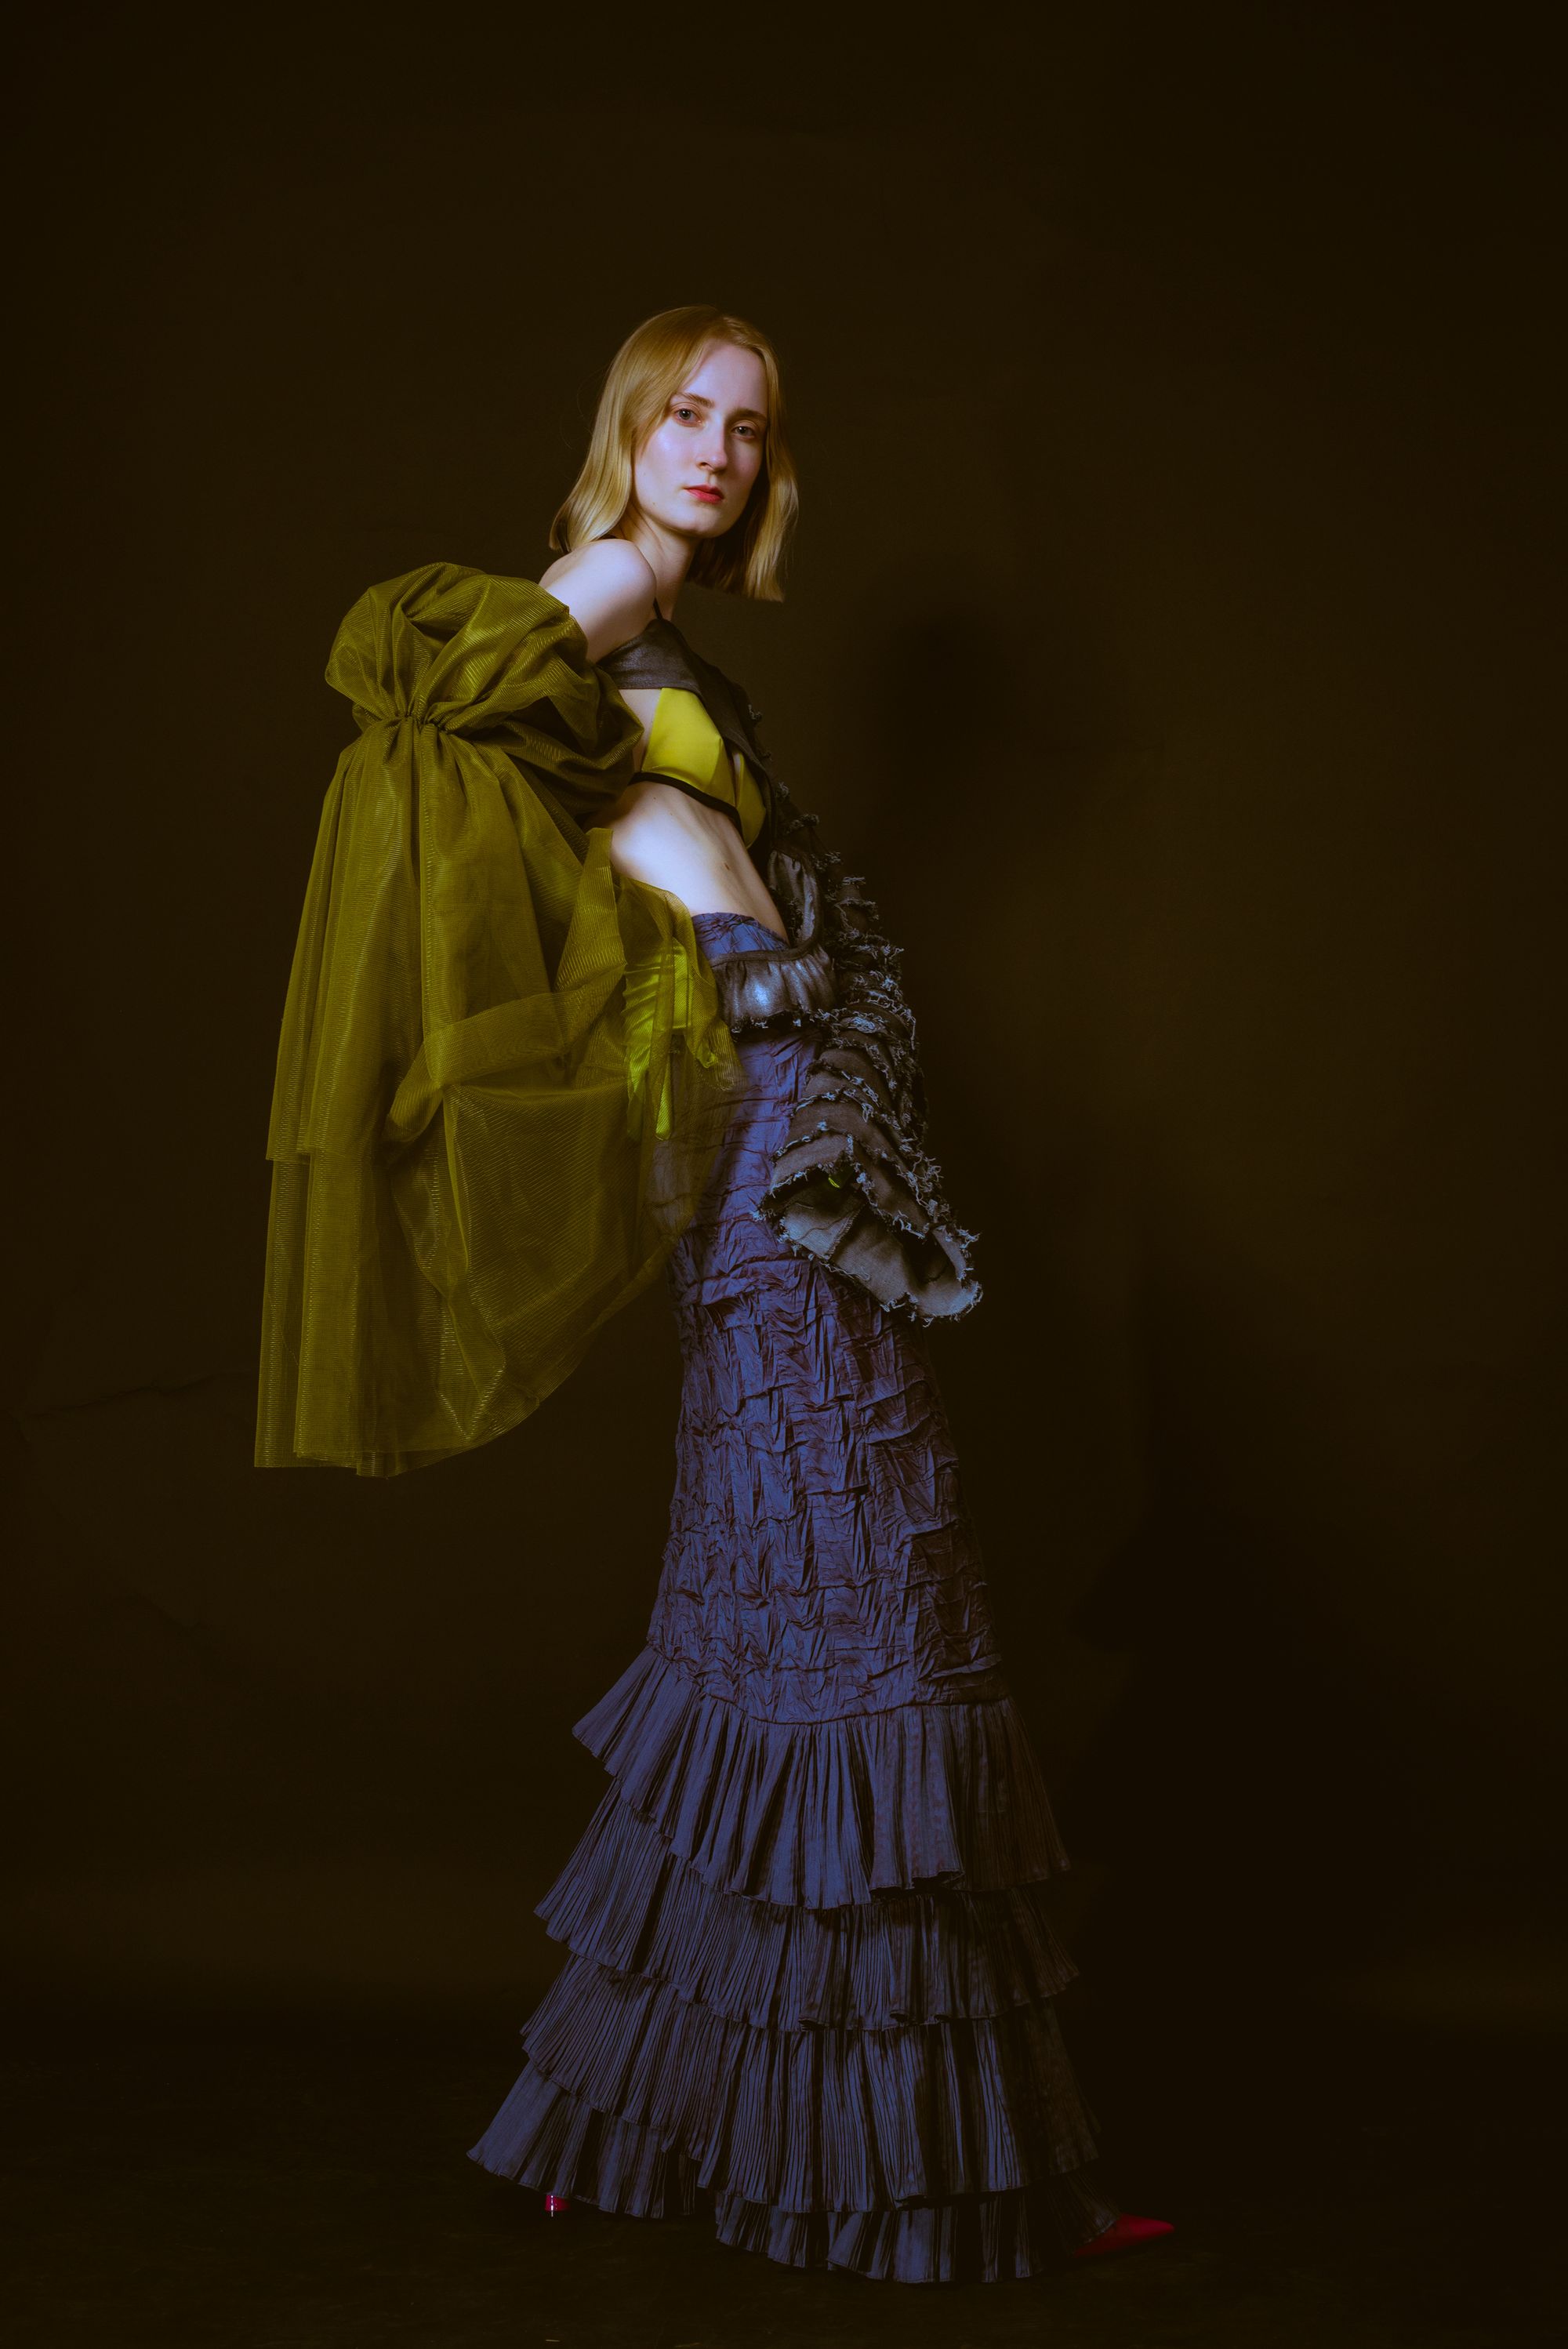 Female modeling clothes from Fashion Designer, Weronika Wrzosek.